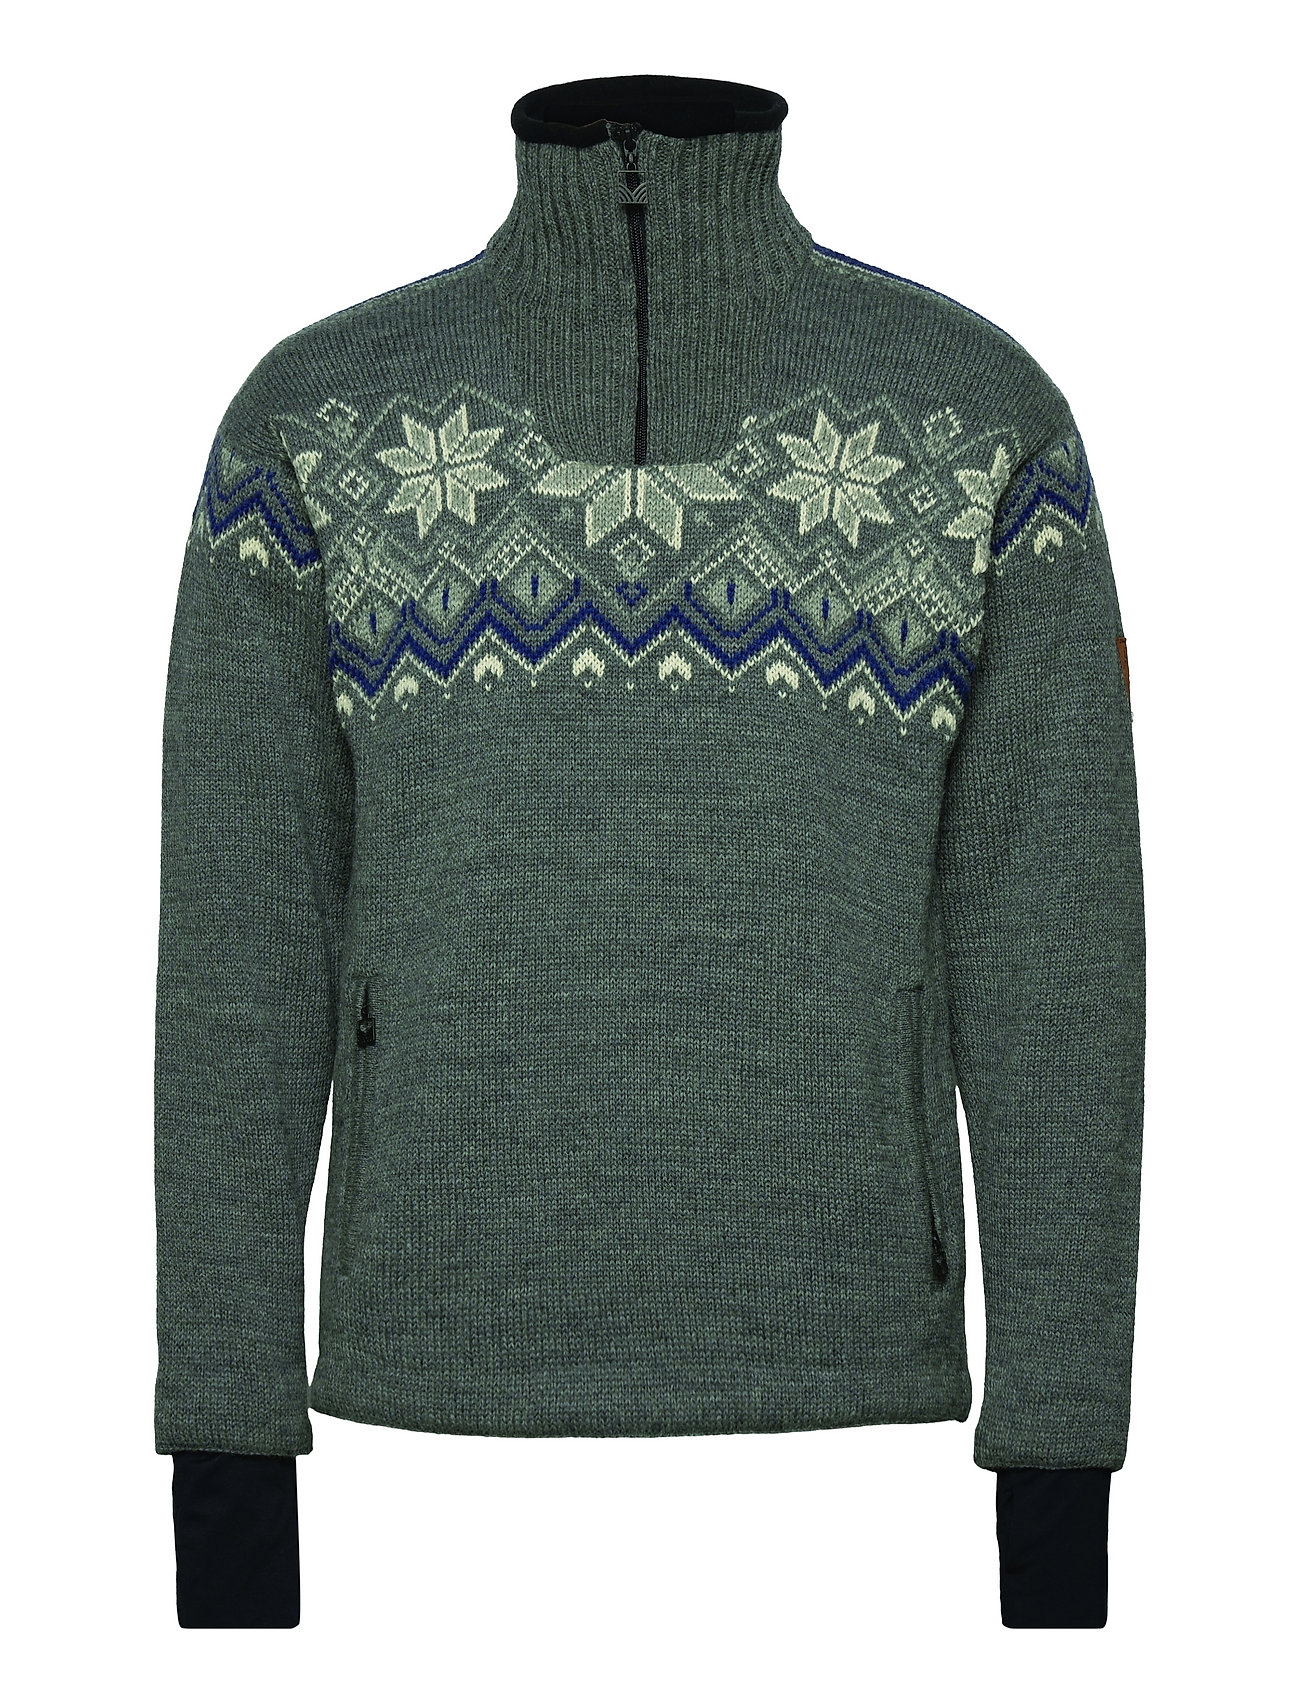 Fongen Wp Masc Sweater Knitwear Half Zip Pullover Grön Dale Of Norway